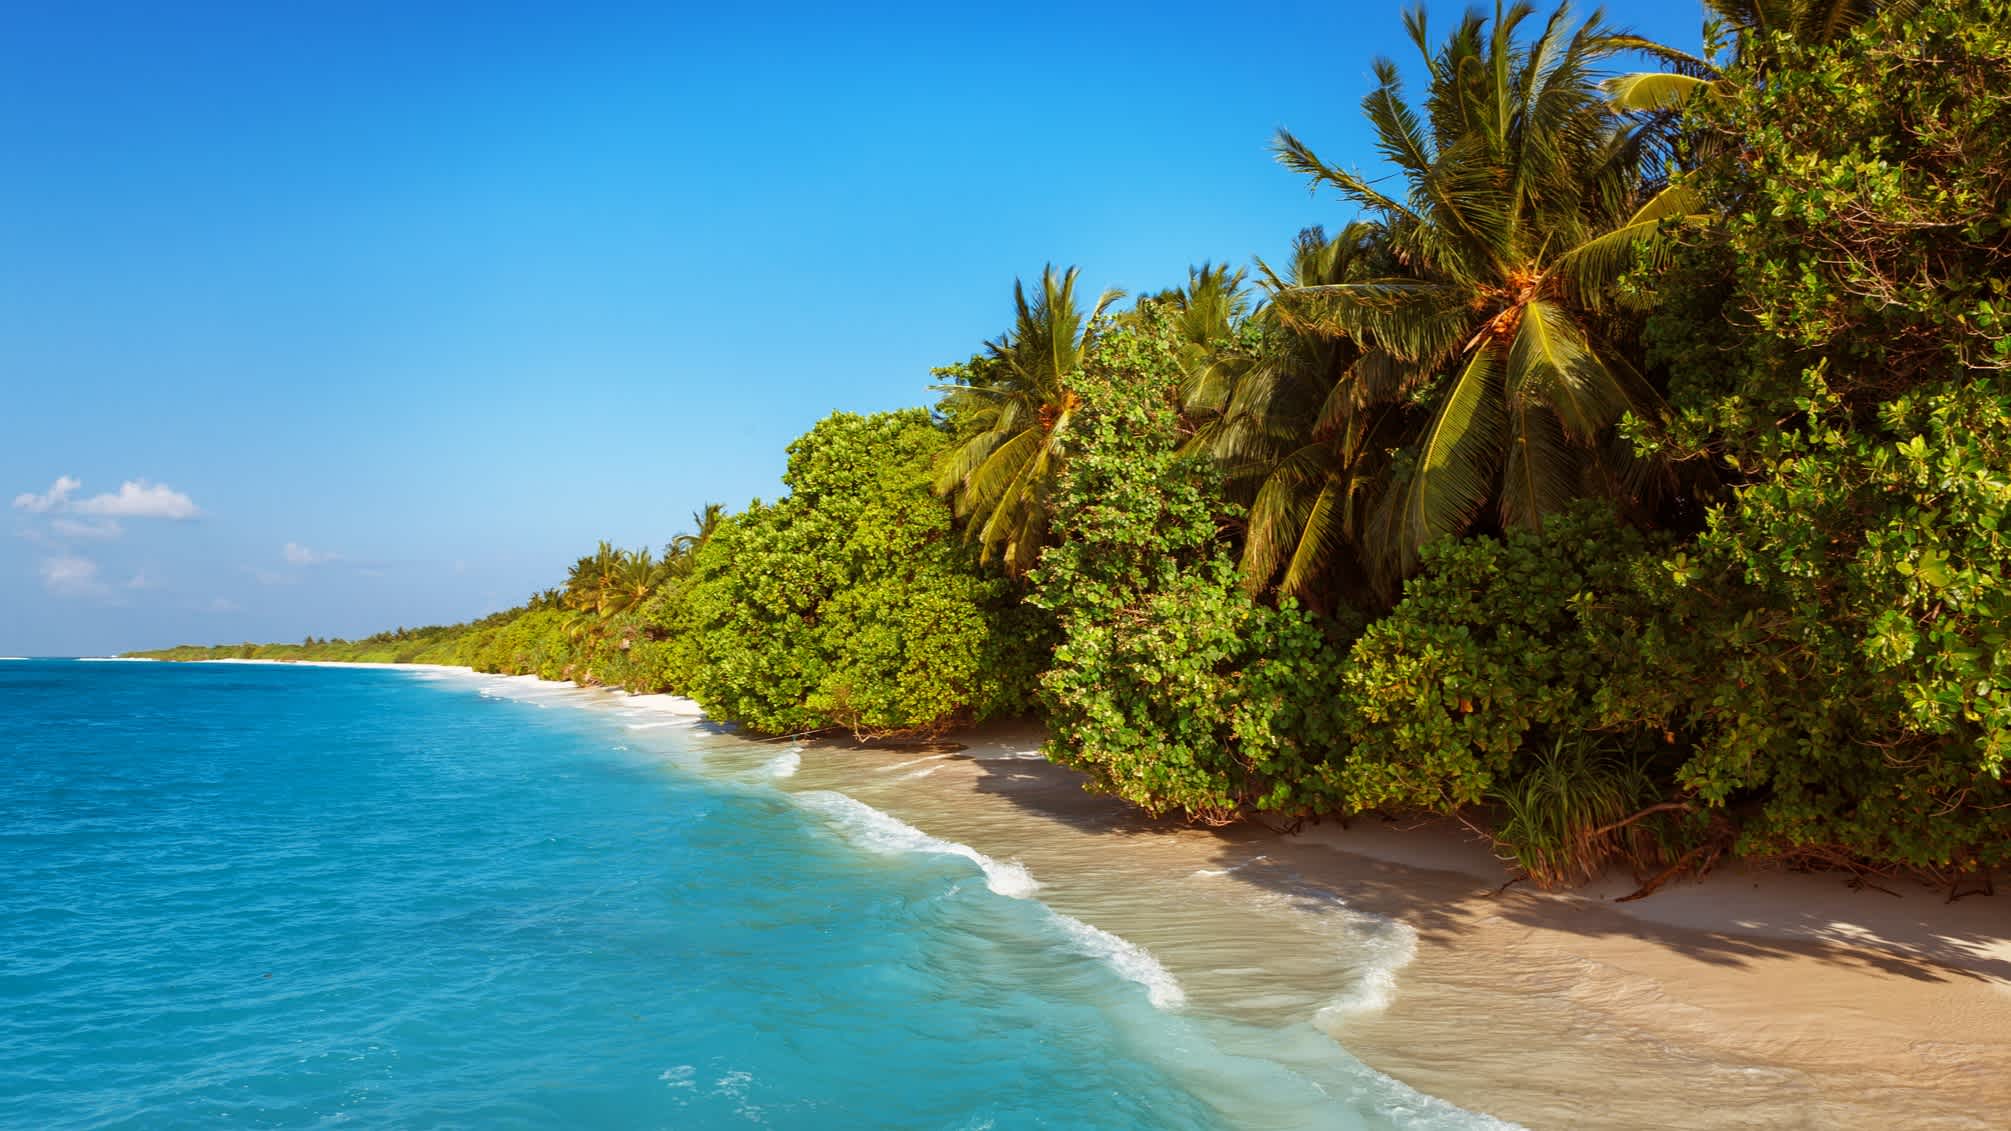 Végétation tropicale dense sur une plage des Maldives